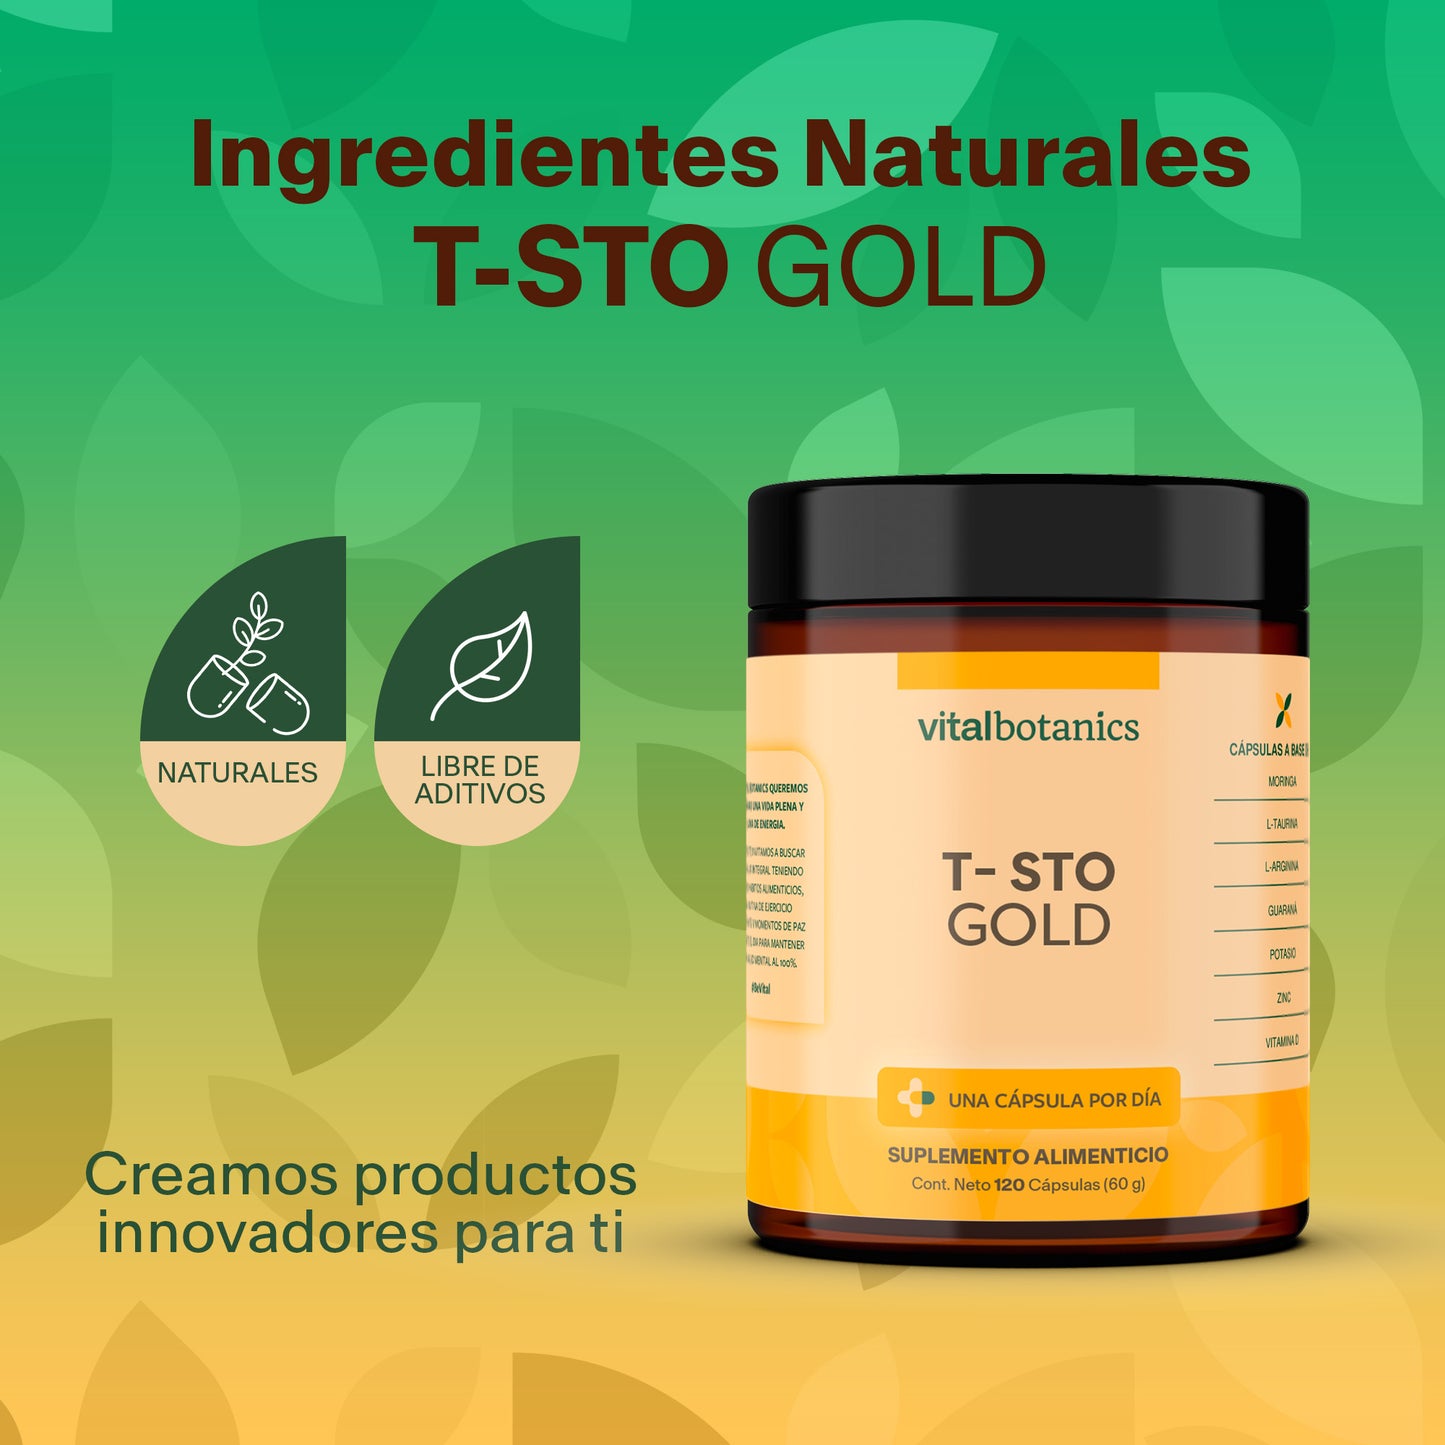 T-STO GOLD | Vitamina D, Potasio, Zinc, L-Arginina, L-Taurina, Guaraná y Moringa